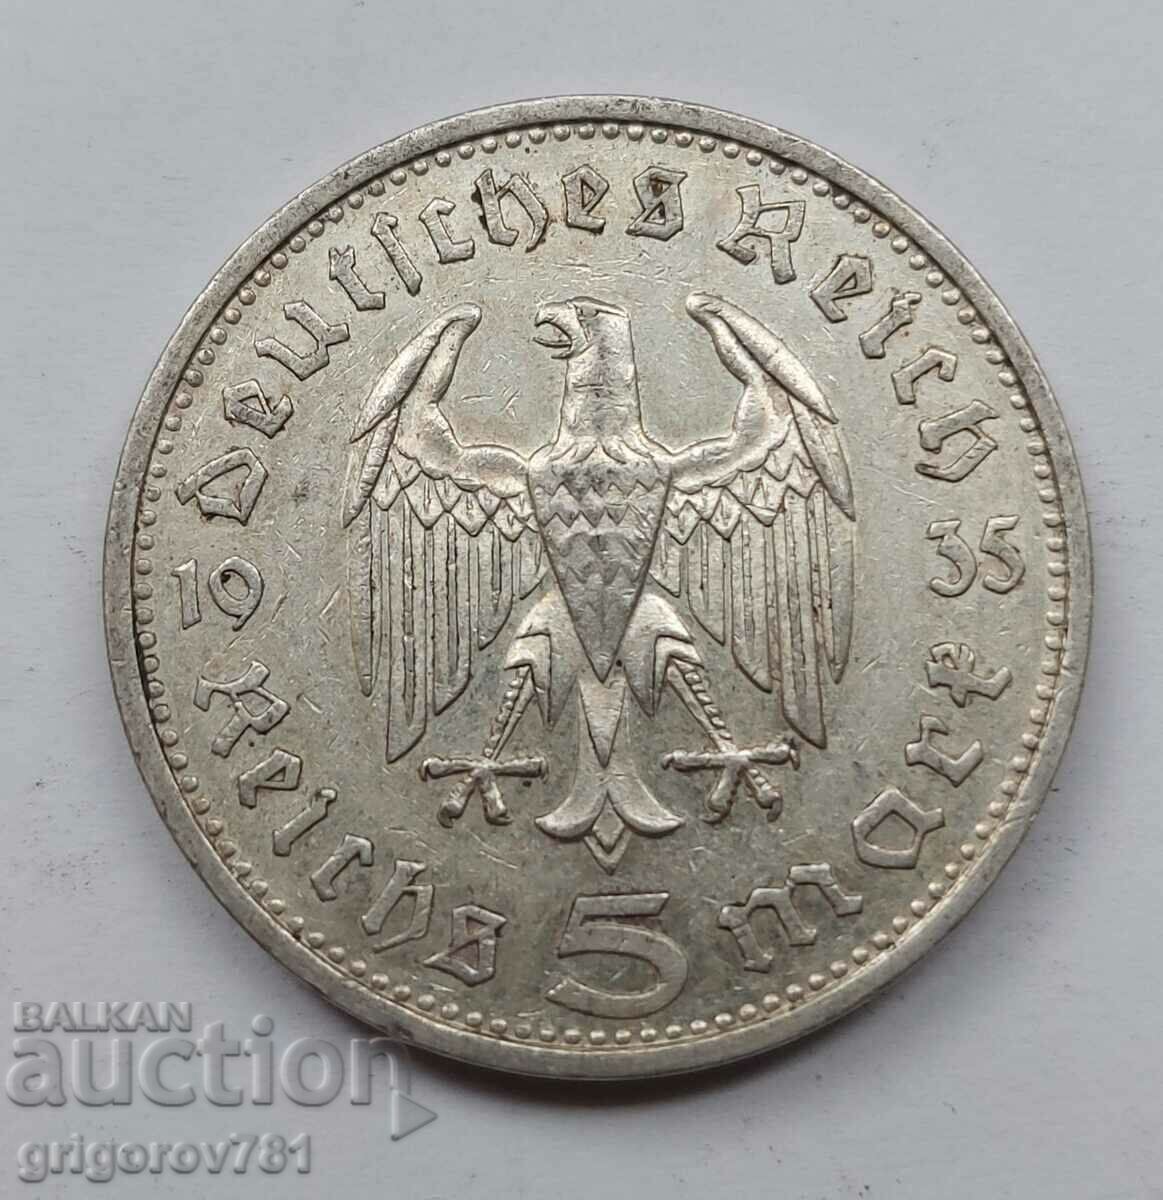 Moneda de argint 5 marci Germania 1935 G III Reich #16